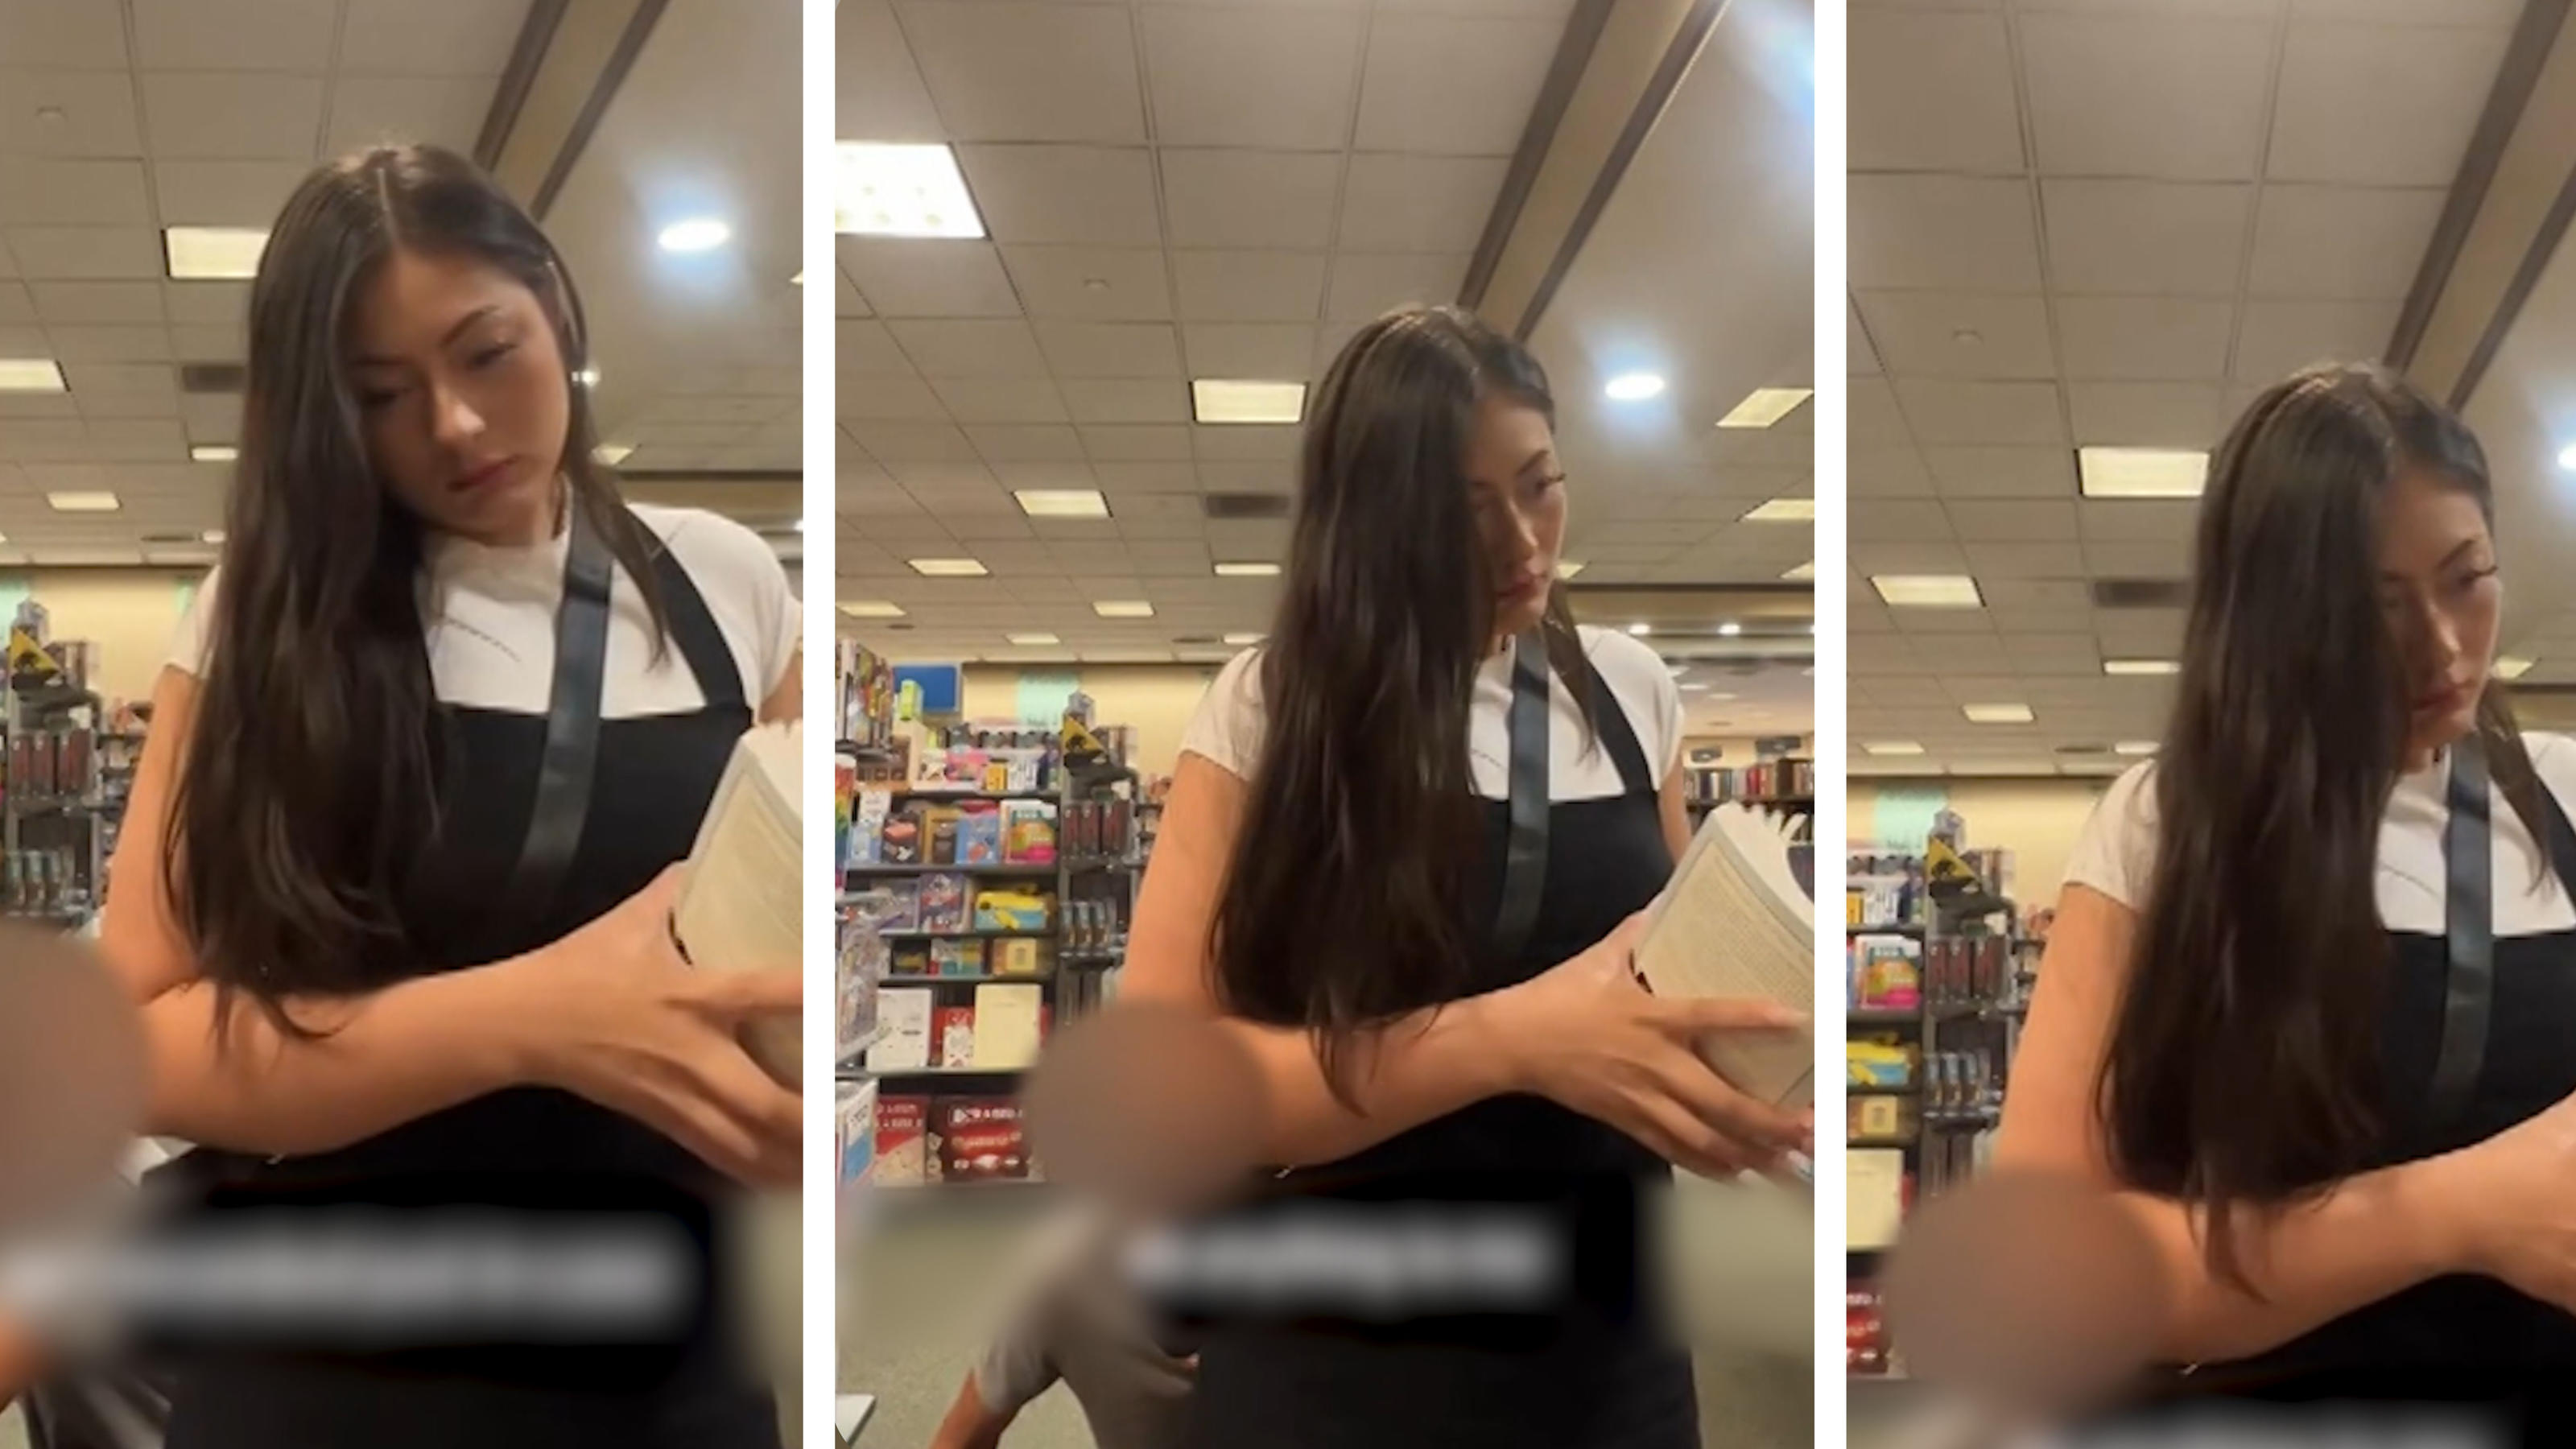 Un hombre acercándose sigilosamente a una mujer en una librería ¿le huele el culo?